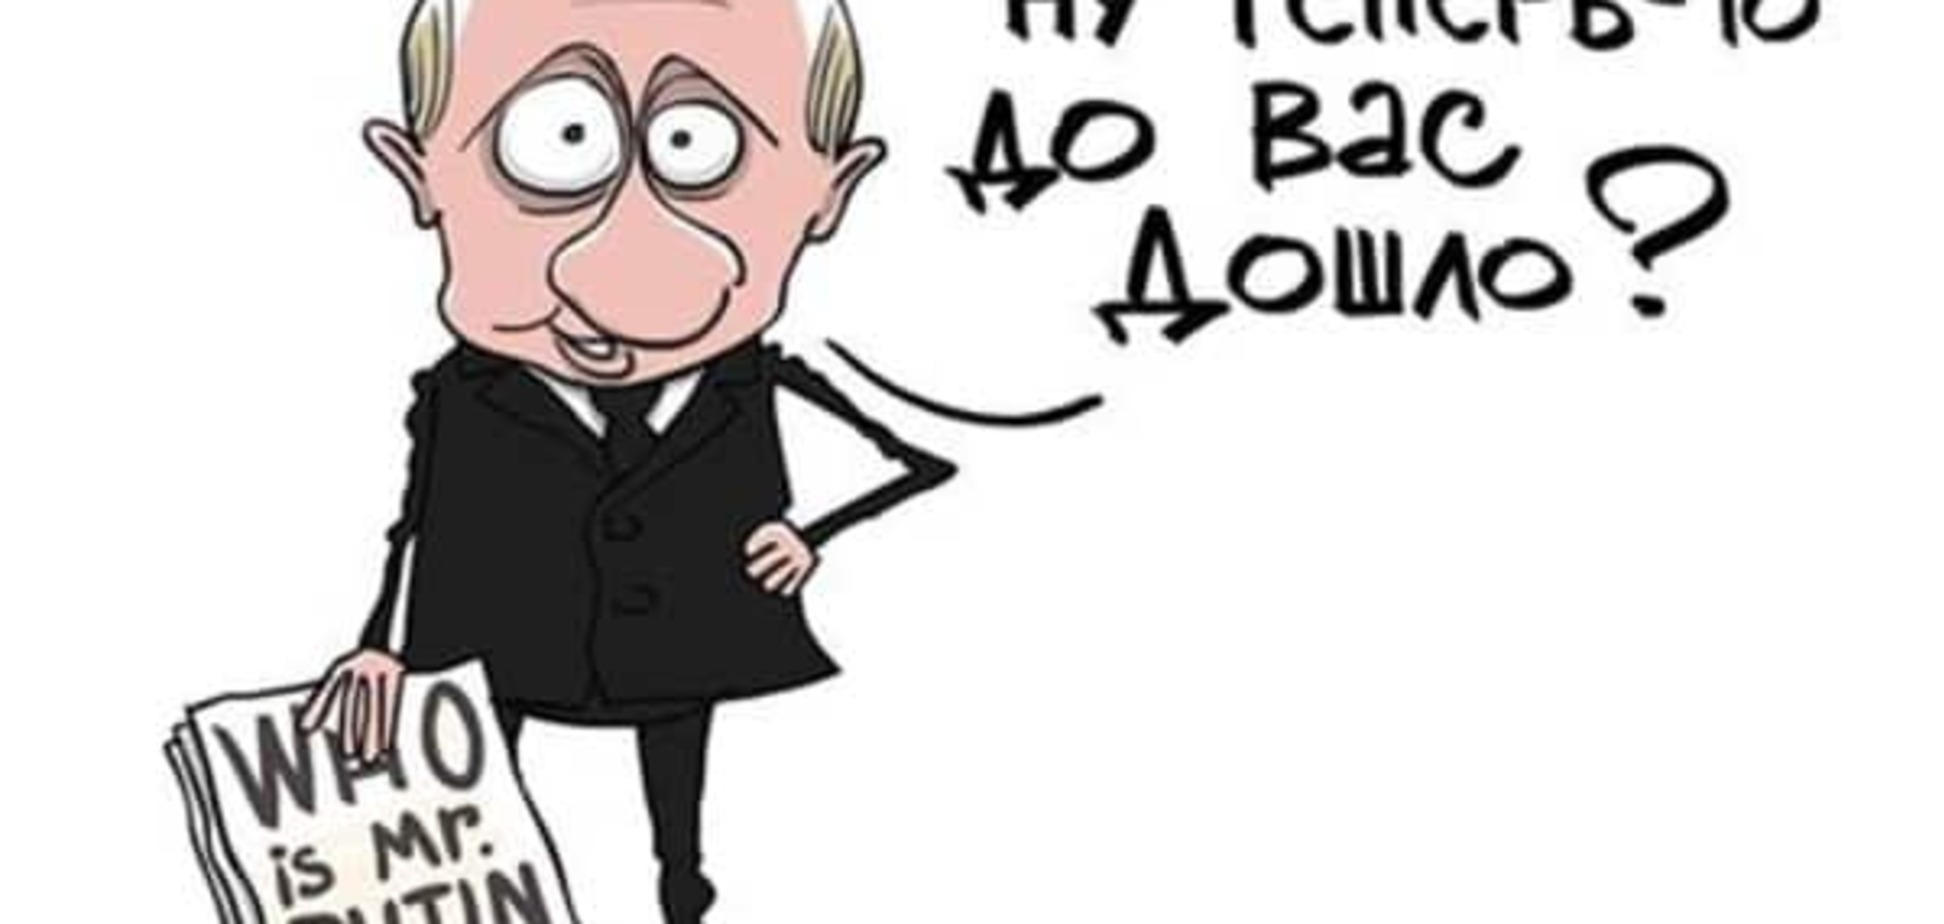 Путиномика на марше: промежуточные результаты 'вставания с колен' и Крымнаша